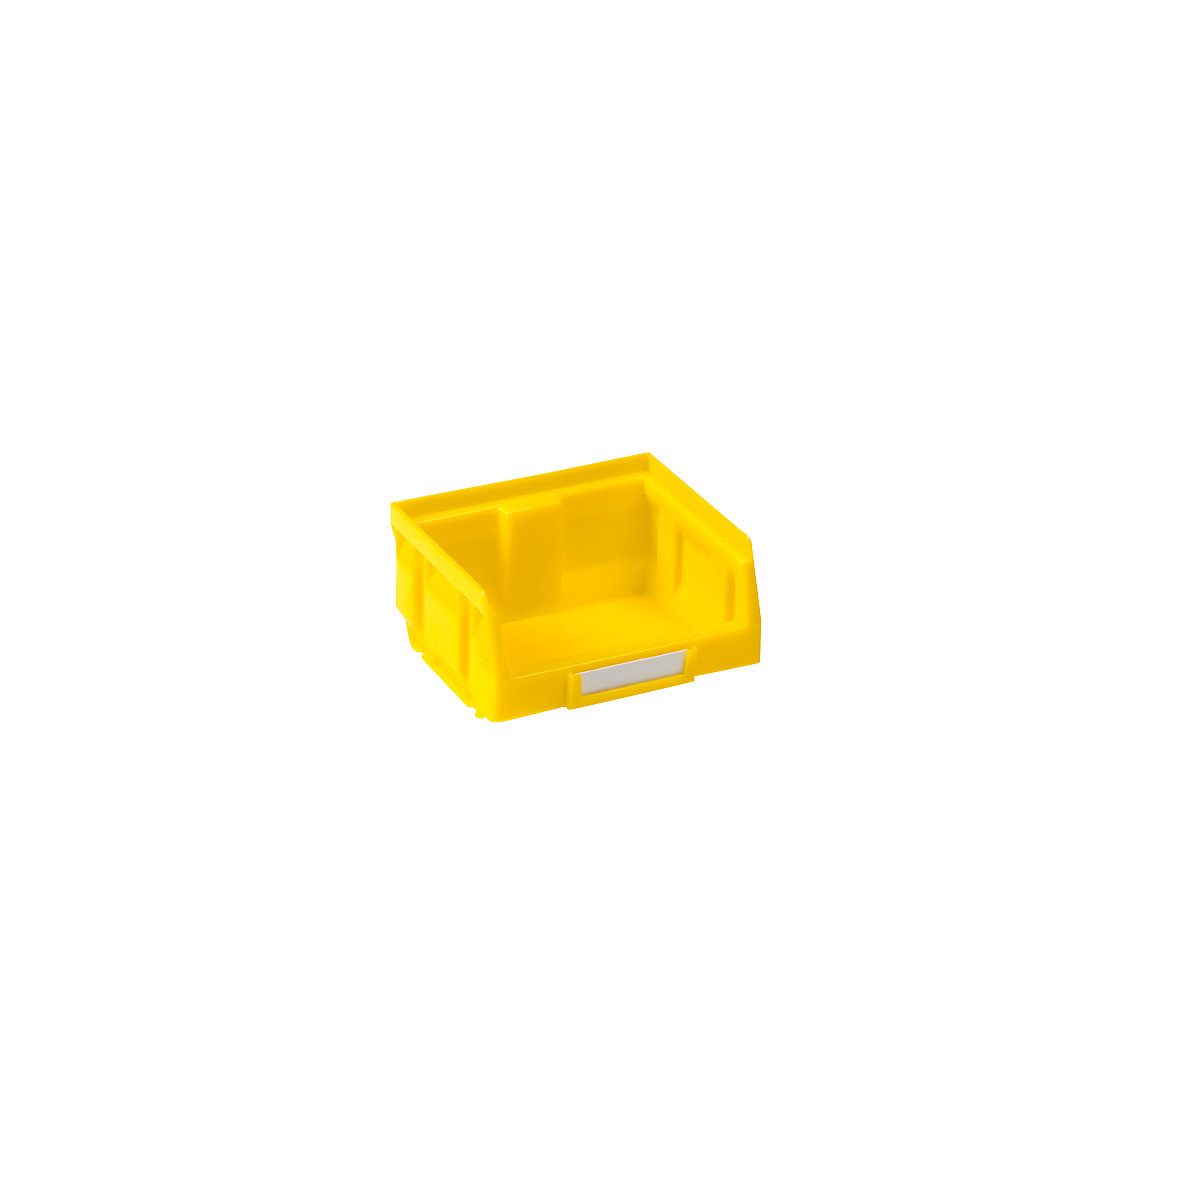 Magazijnbak van polyethyleen, l x b x h = 88 x 105 x 54 mm, geel, VE = 50 stuks-9